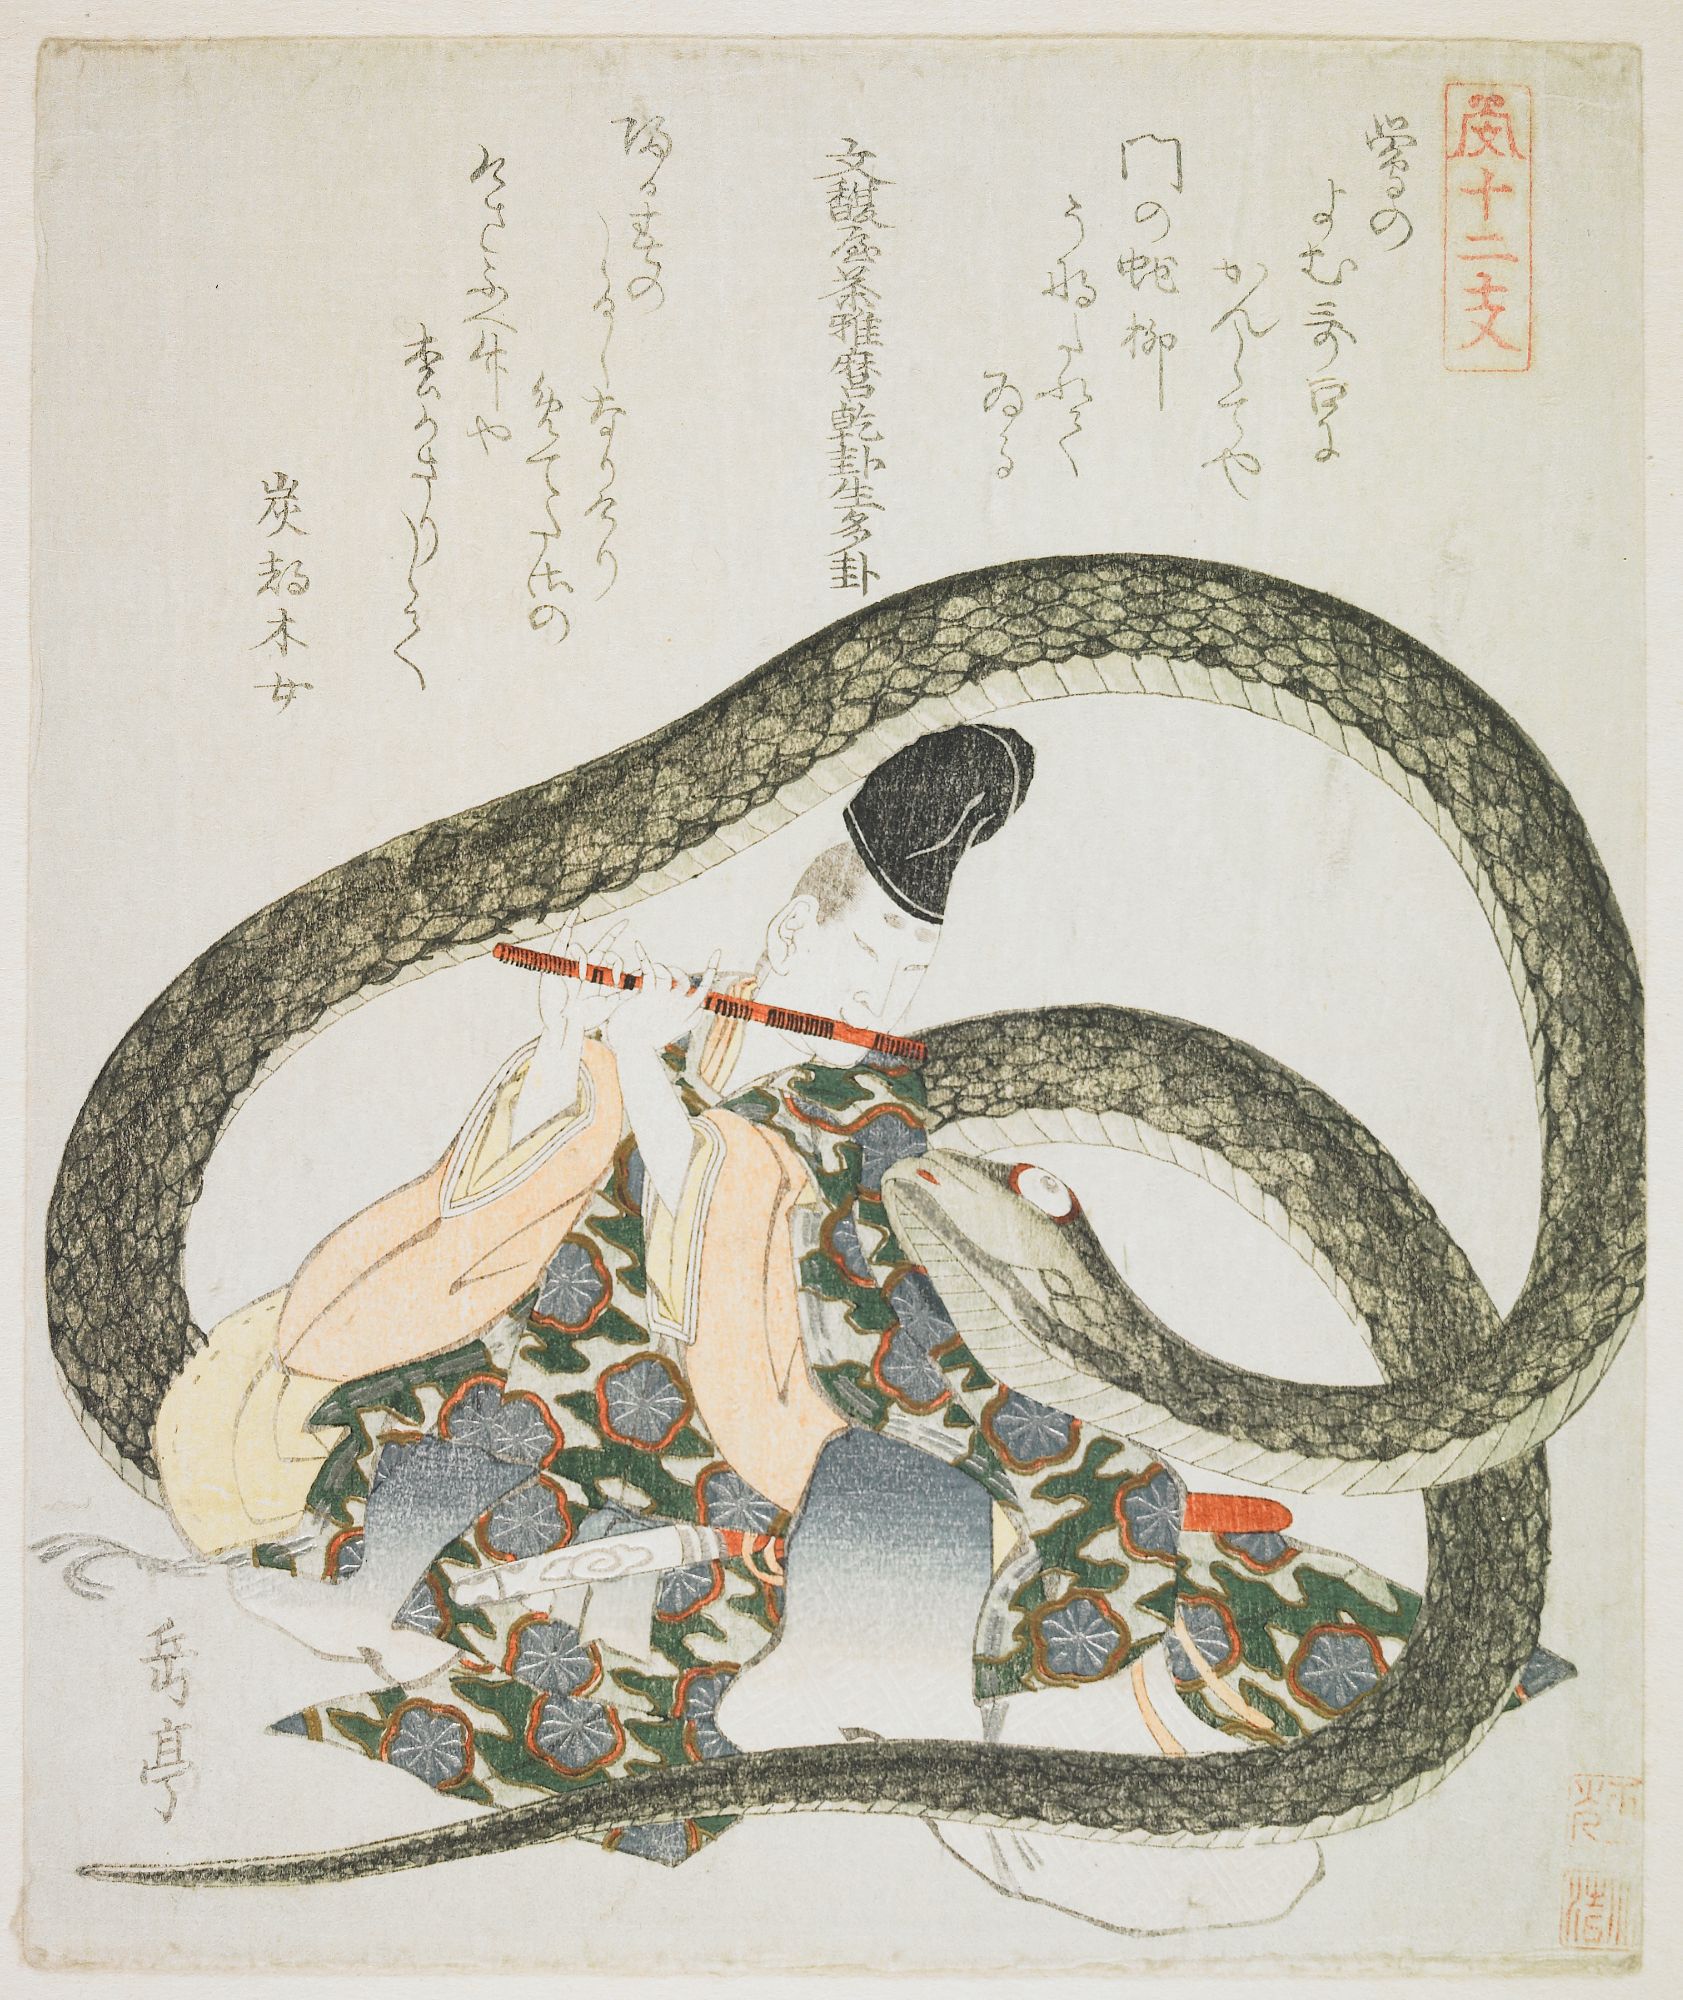 Змея на китайском. Япония мифология Хэби. Хэби Ёкай японская мифология. Хэби Ёкай змей. Змея в японской мифологии.